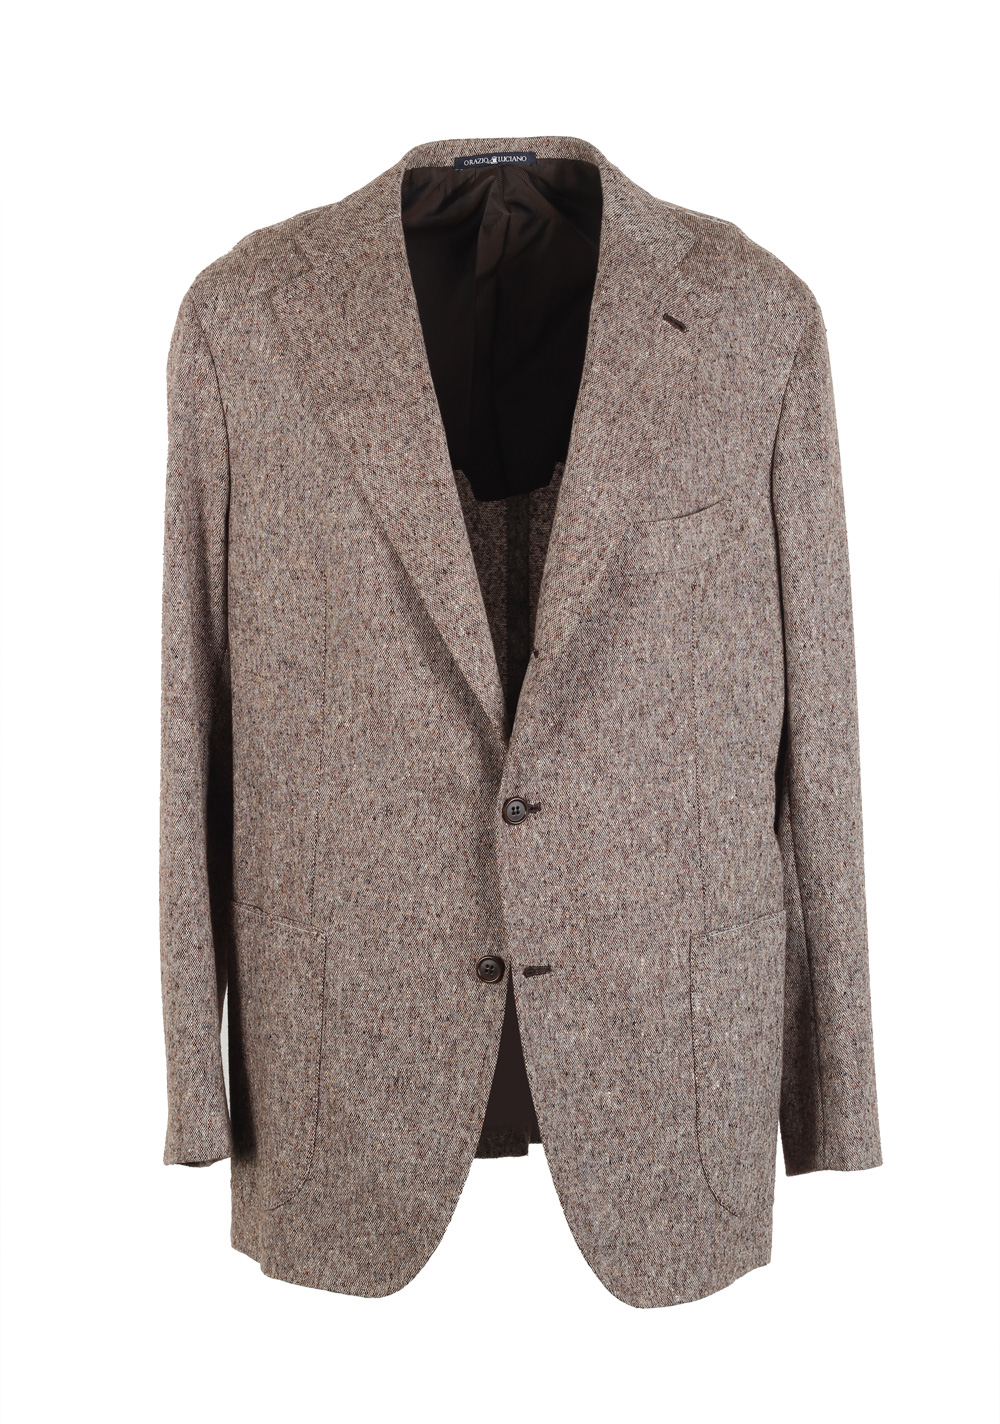 Orazio Luciano La Vera Sport Coat Size 54 / 44R U.S. Wool | Costume Limité